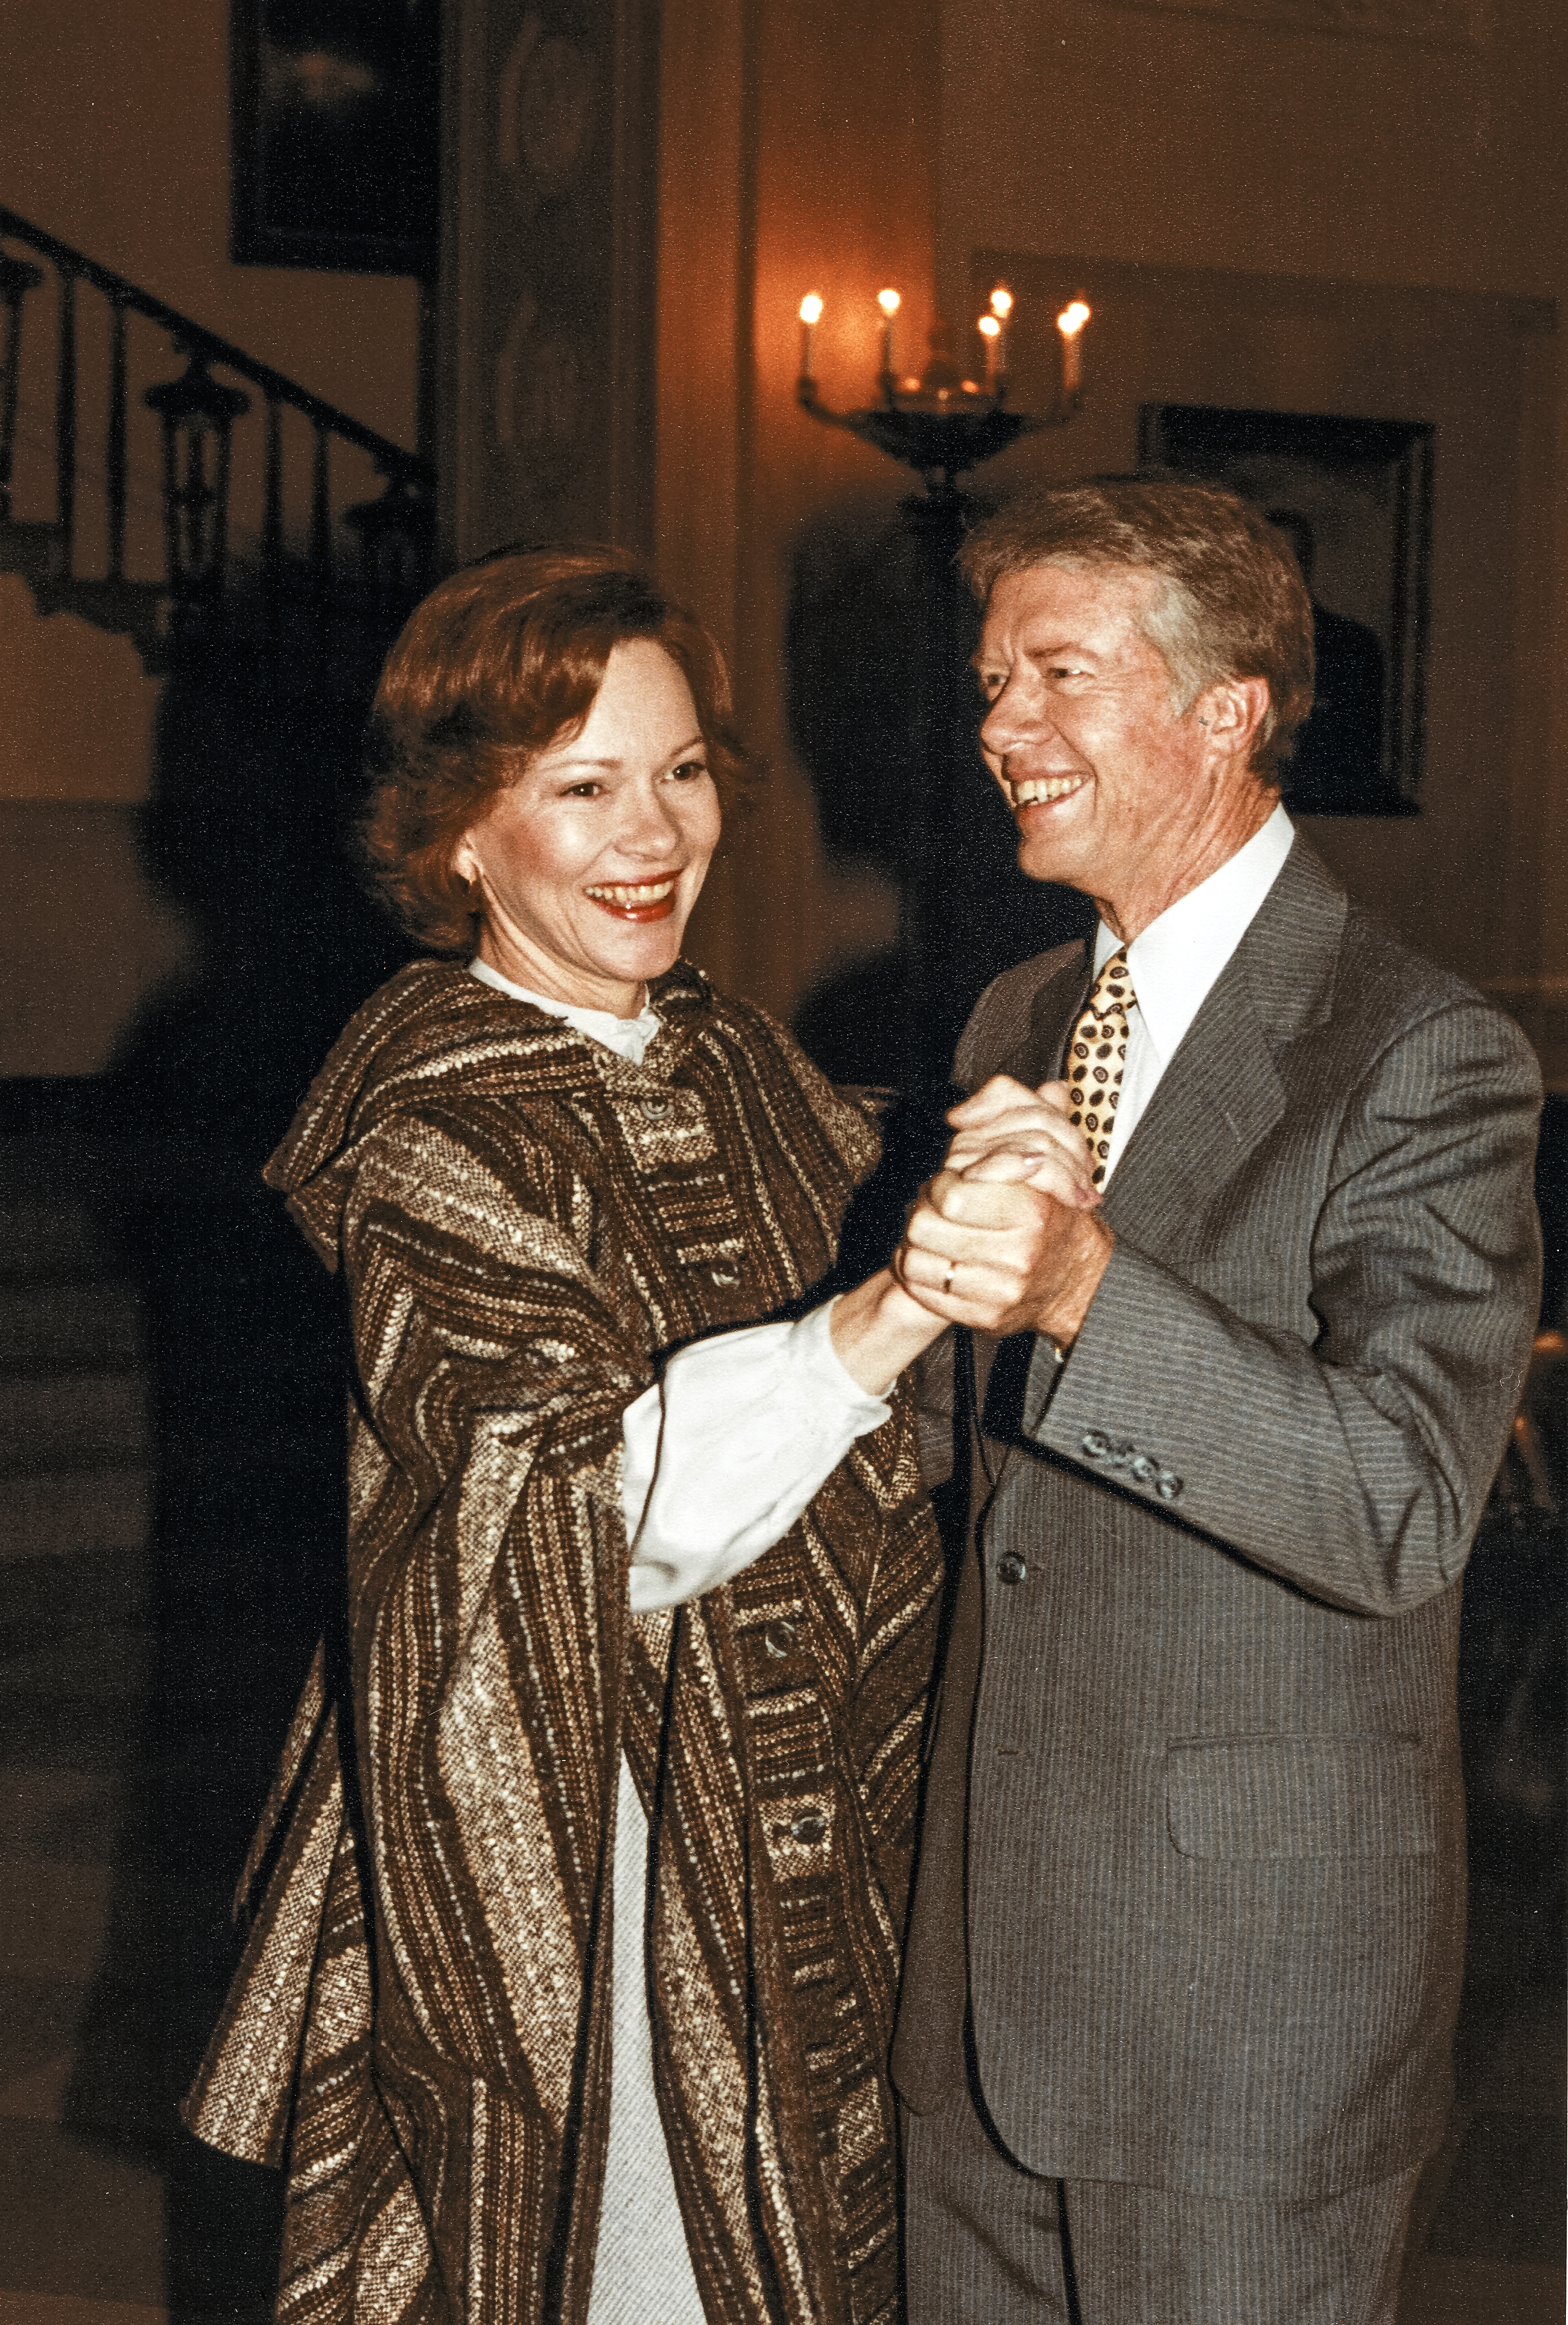 Le 19 juillet 1977, Jimmy Carter se rend à la Maison-Blanche pour conduire son véhicule. | Source : Rosalynn Carter et Jimmy Carter sourient alors qu'ils dansent ensemble dans le grand foyer de la Maison Blanche, à Washington D.C., le 31 janvier 1979. | Source : Getty Images